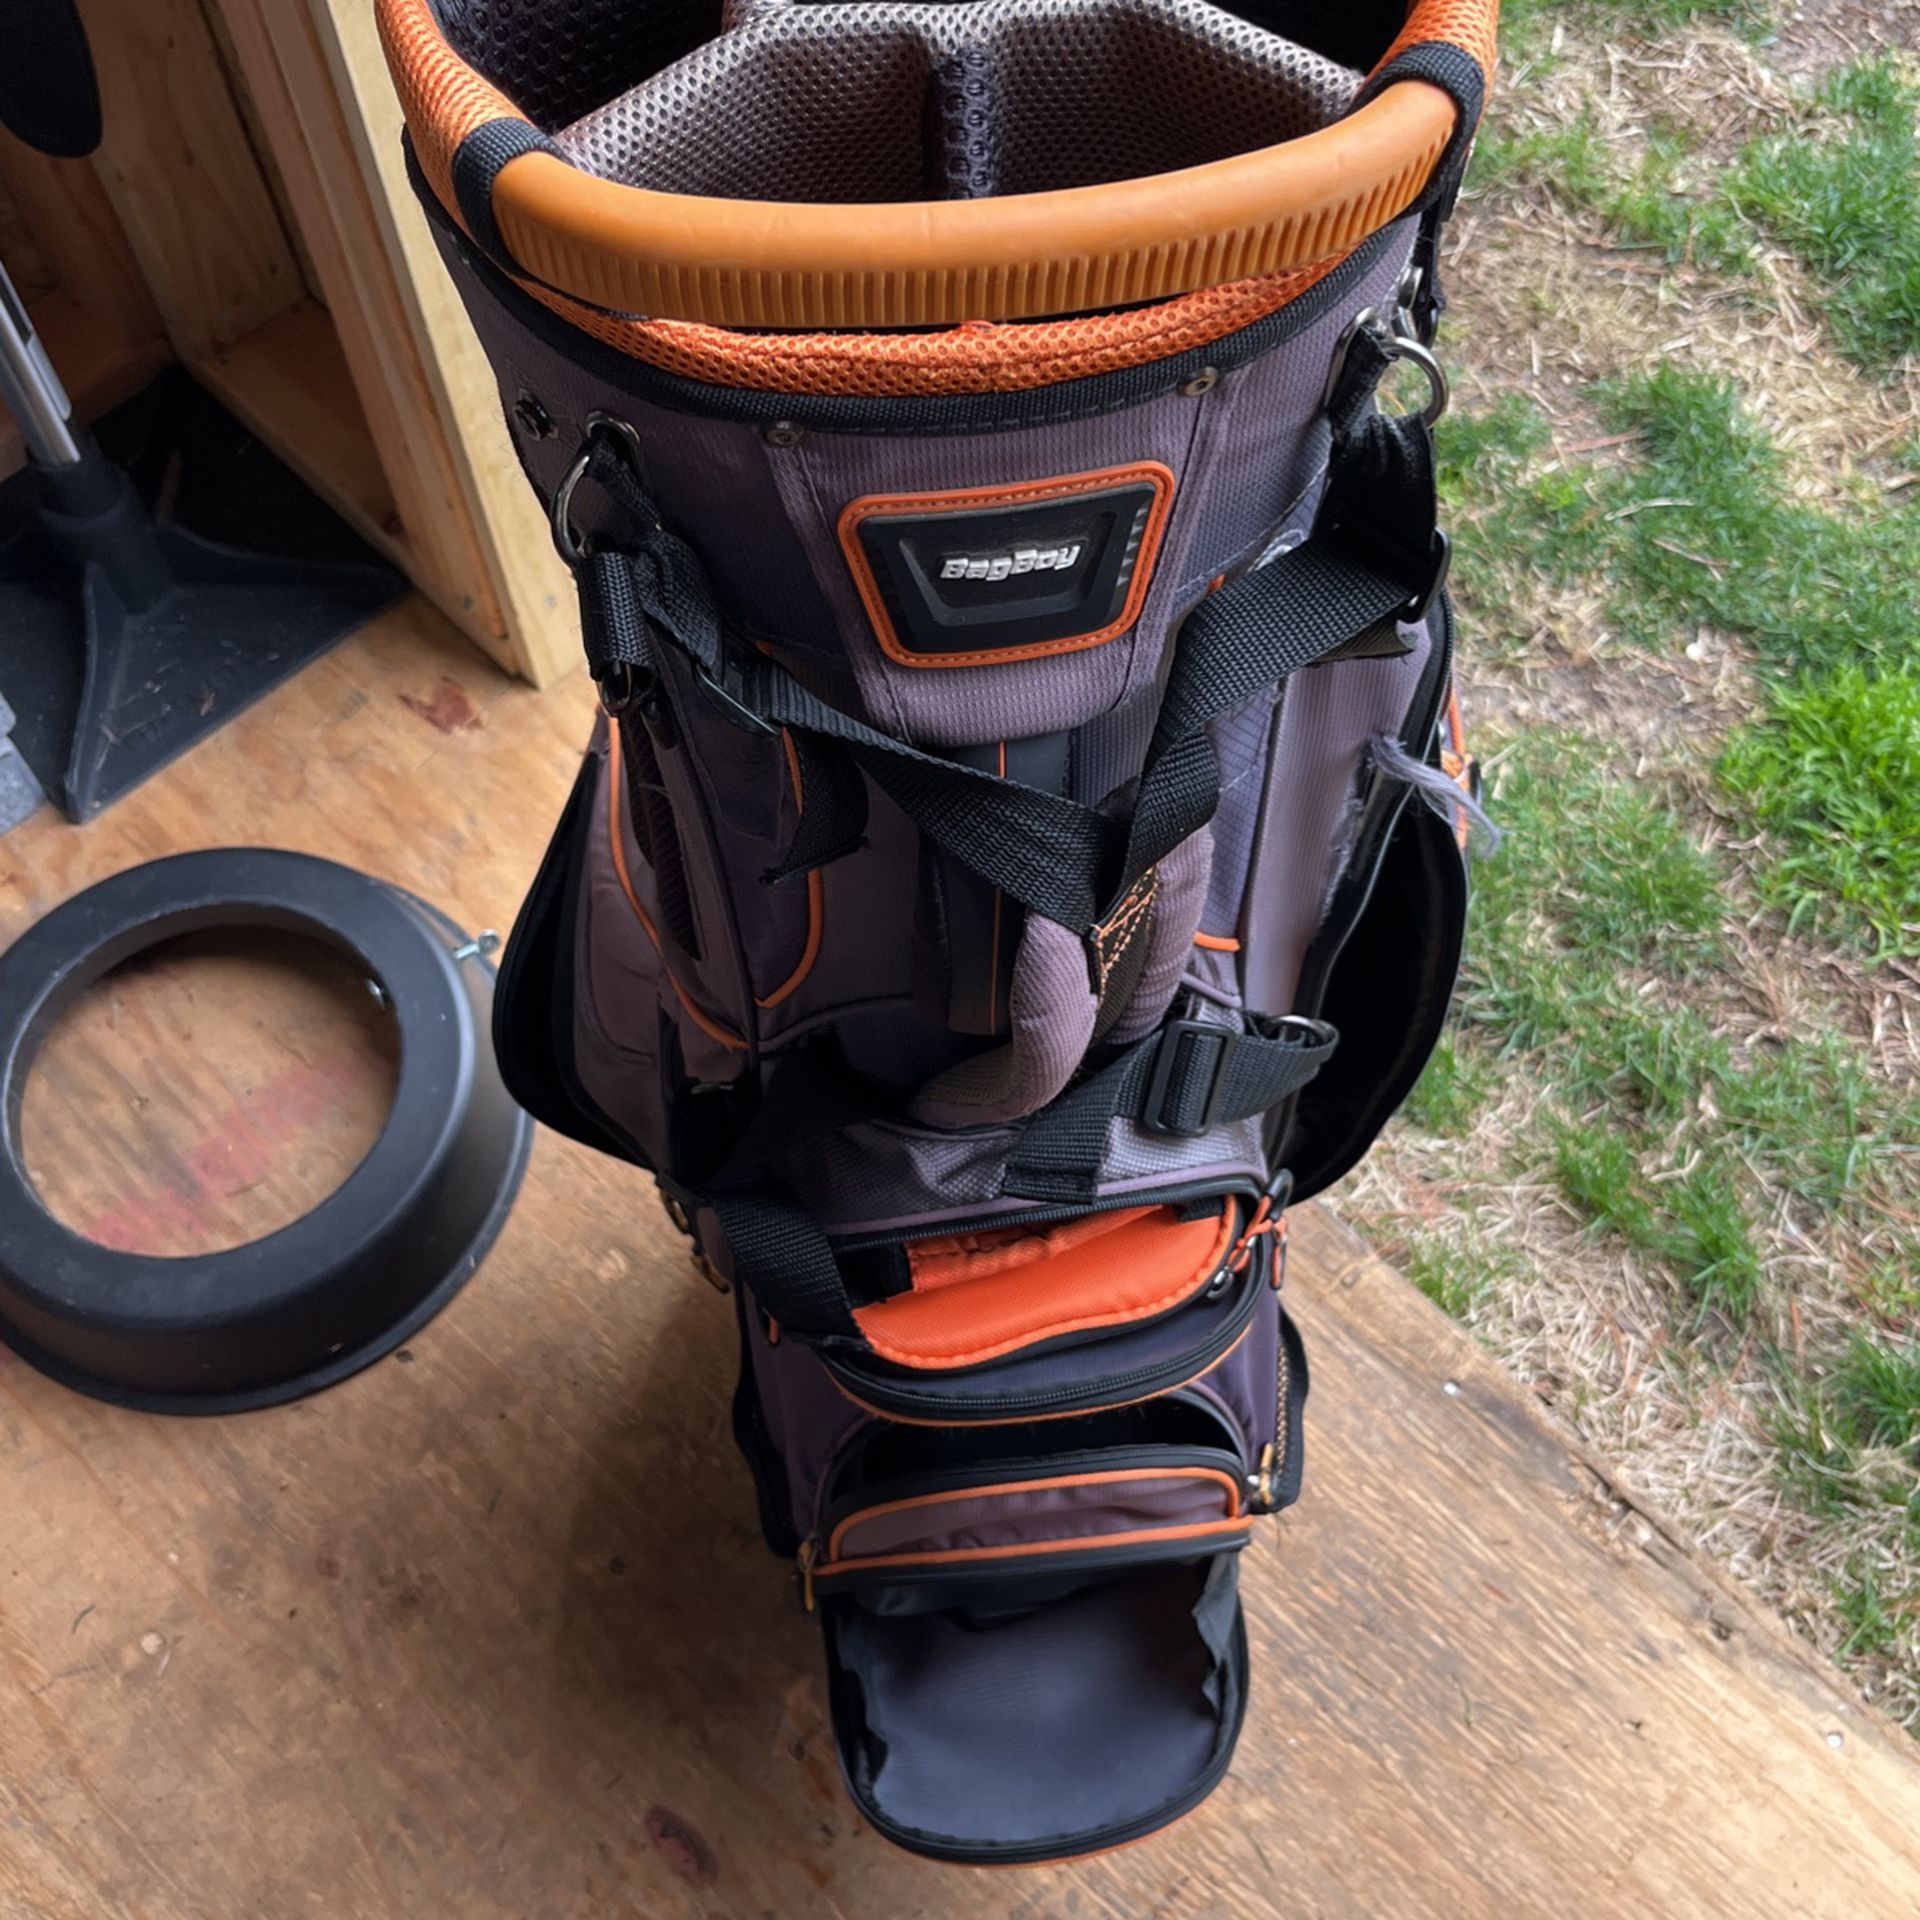 Bag Boy Golf bag